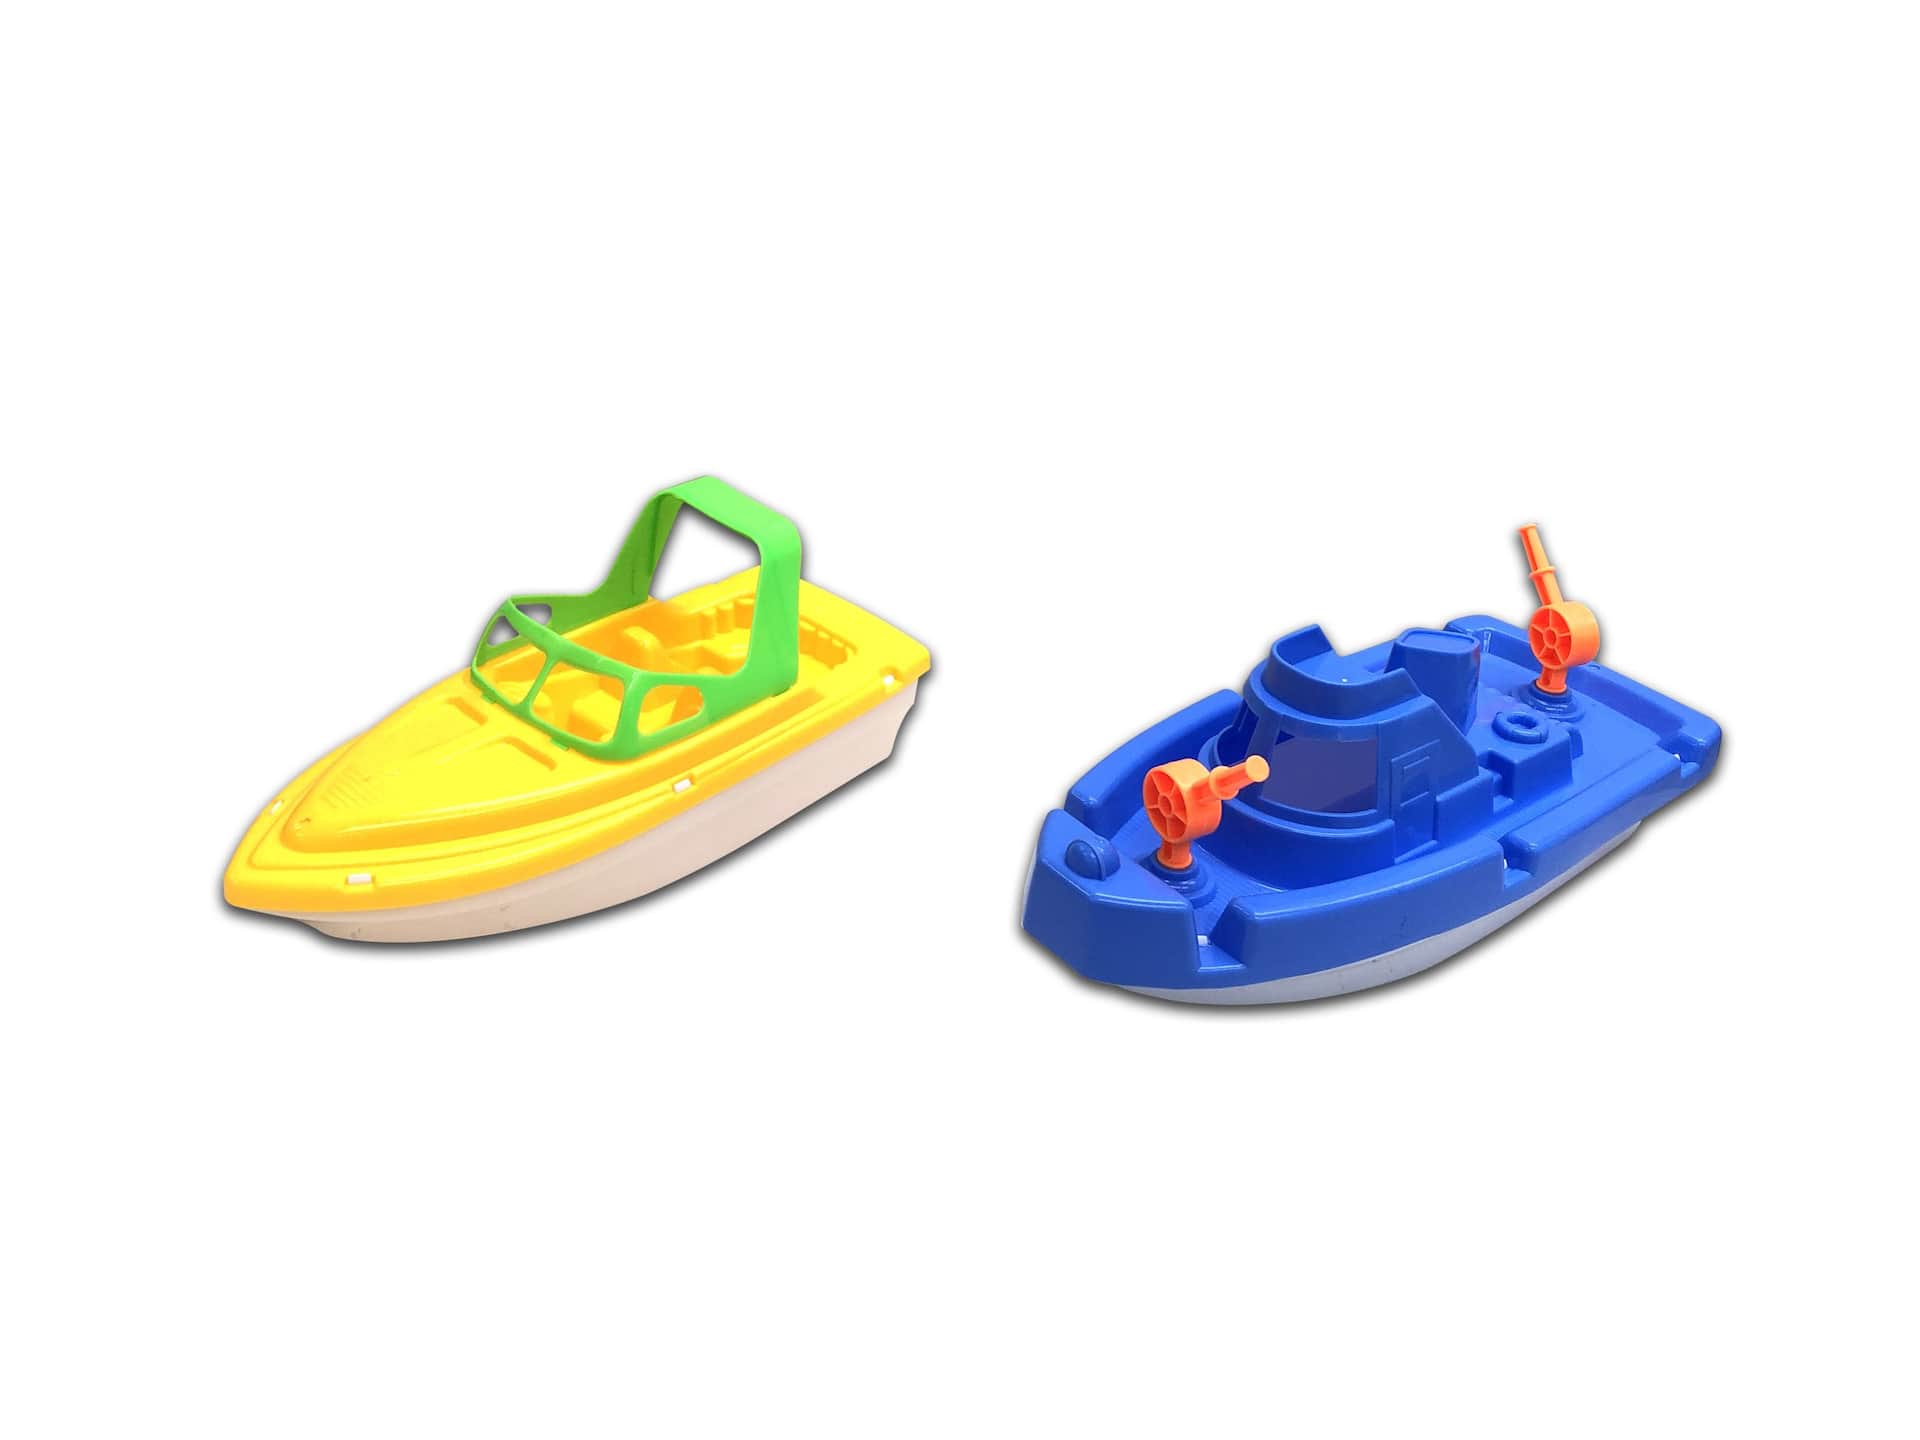 Jouet flottant en plastique Agglo pour la plage, la piscine et le bain,  enfants de 2 ans et plus, assorti